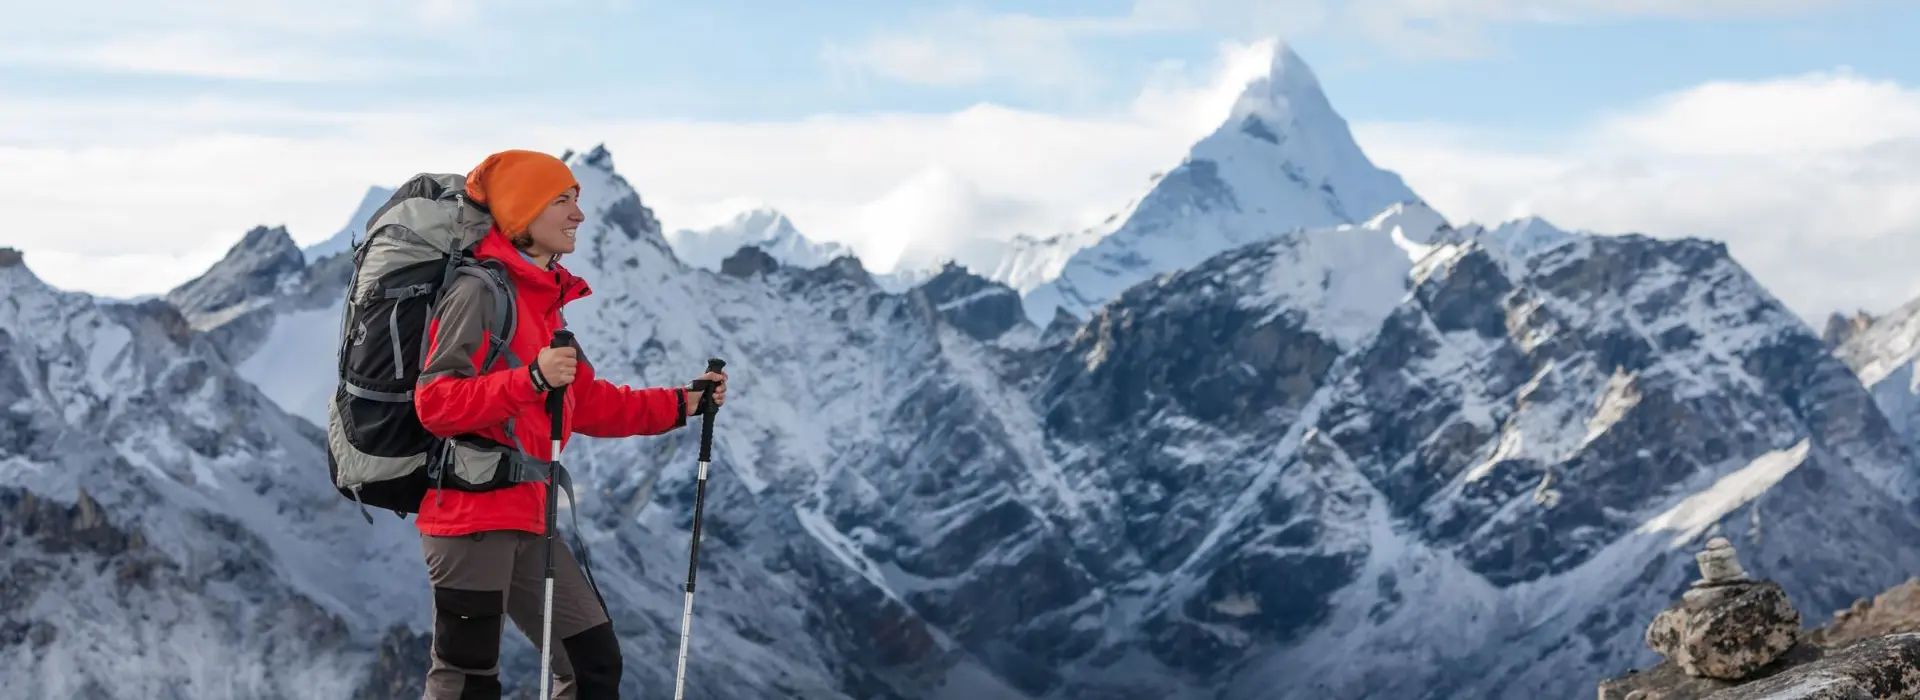 Everest Base Camp Trek Distance, Length and Elevation